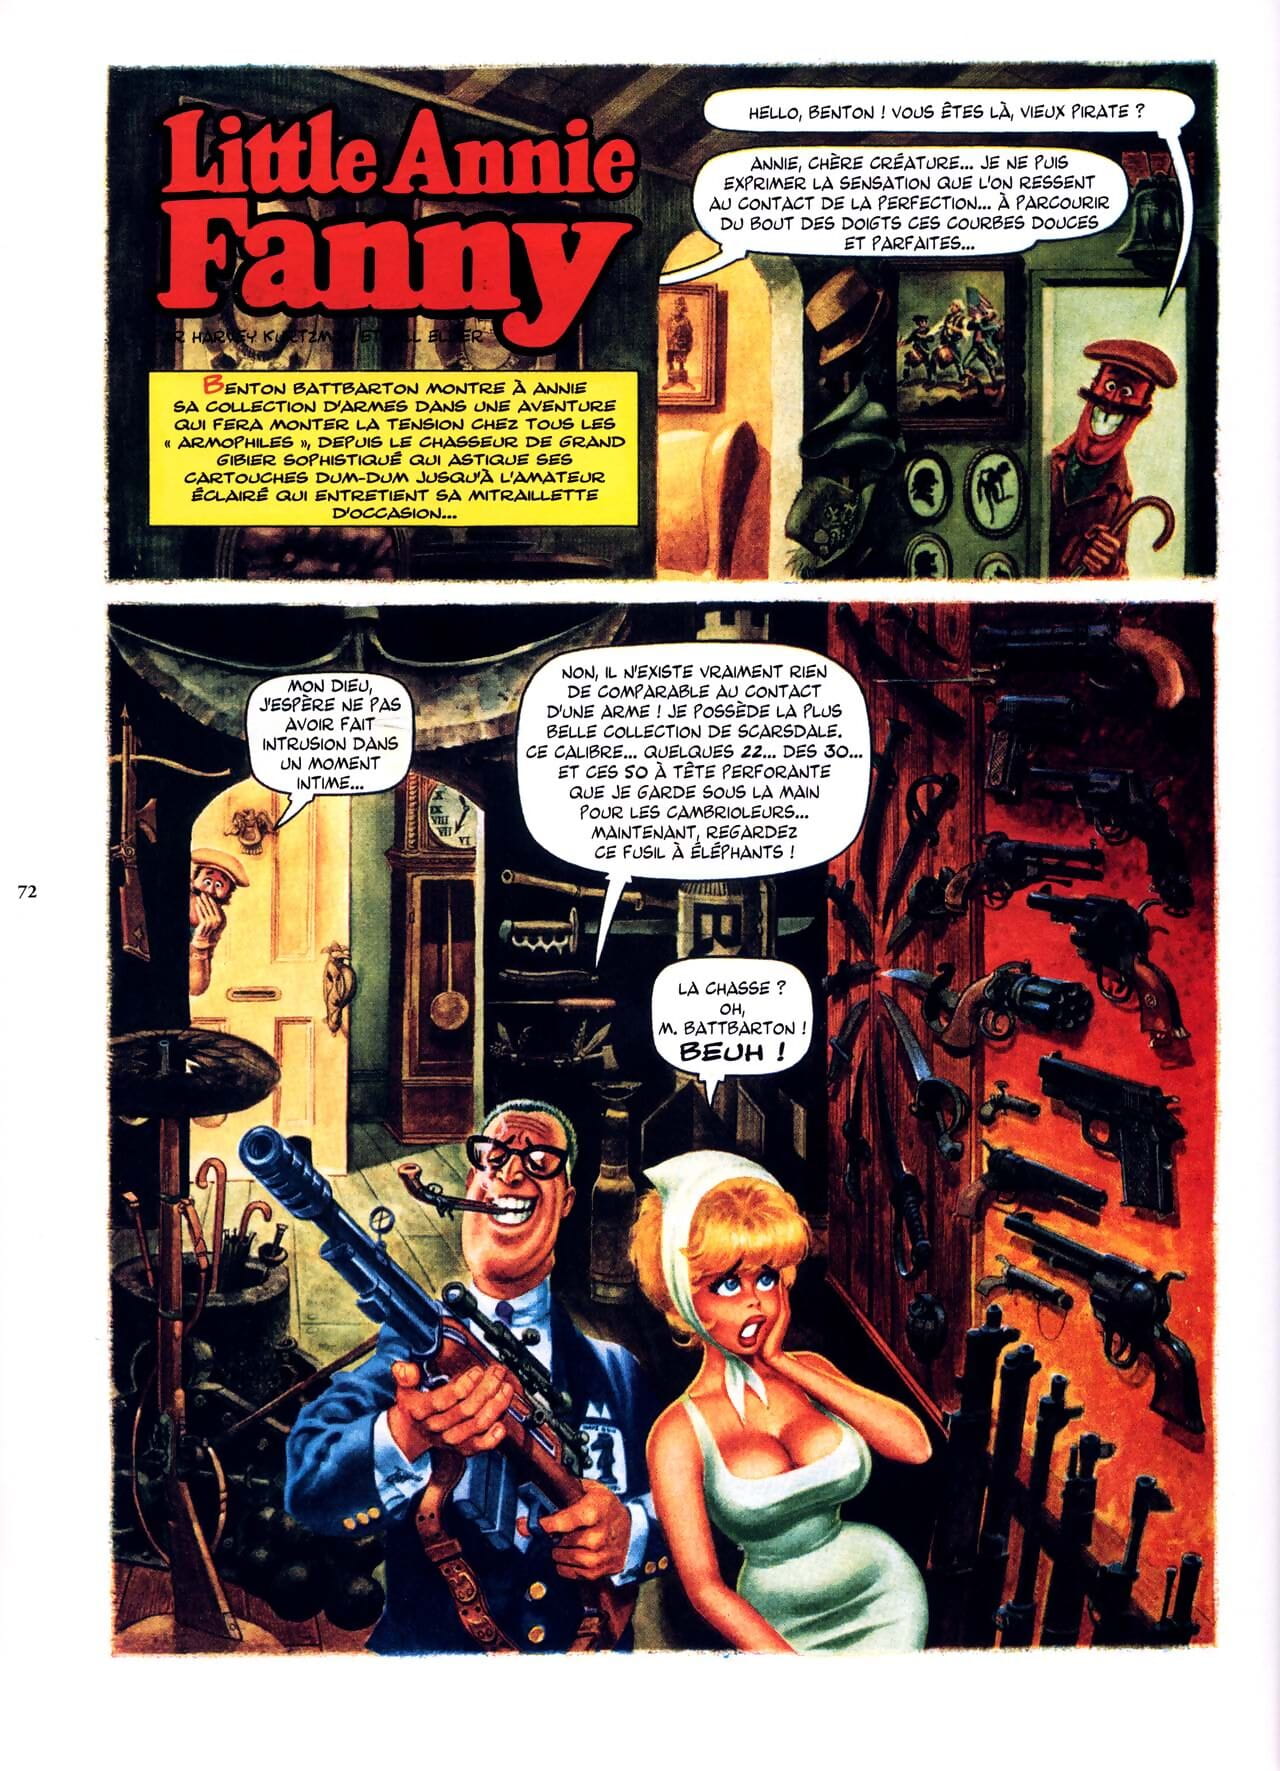 peu Annie fanny vol 1 - 1962-1965 - PARTIE 4 page 1